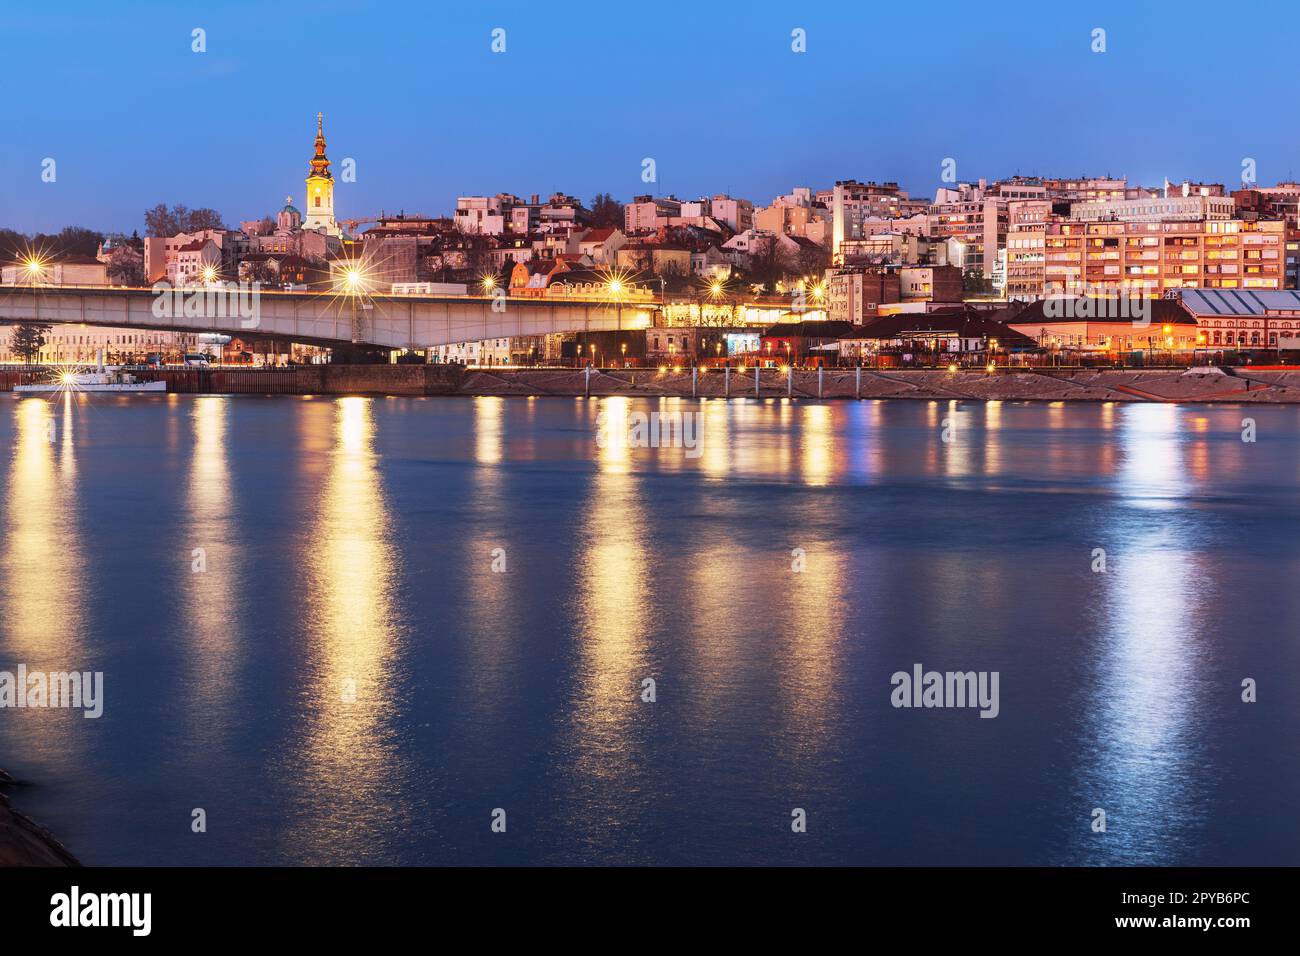 Schöne Aussicht auf das historische Zentrum von Belgrad am Ufer der Save, Serbien Stockfoto